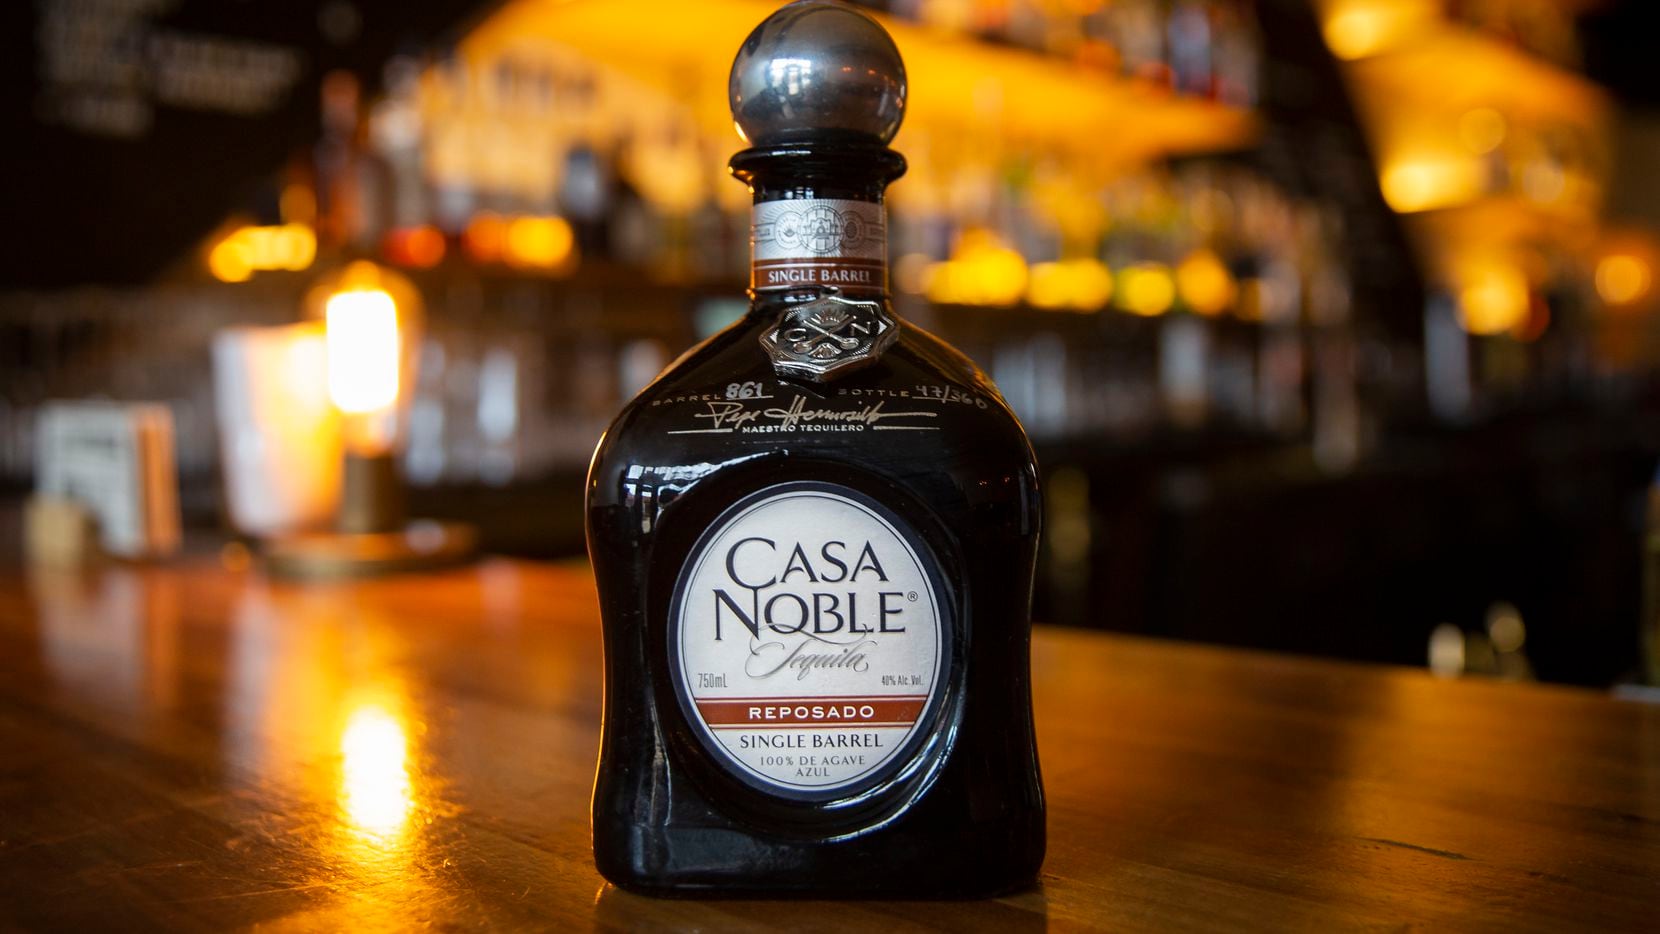 The Casa Noble Reposado Deep Ellum Edition singe barrel tequila at Shoals